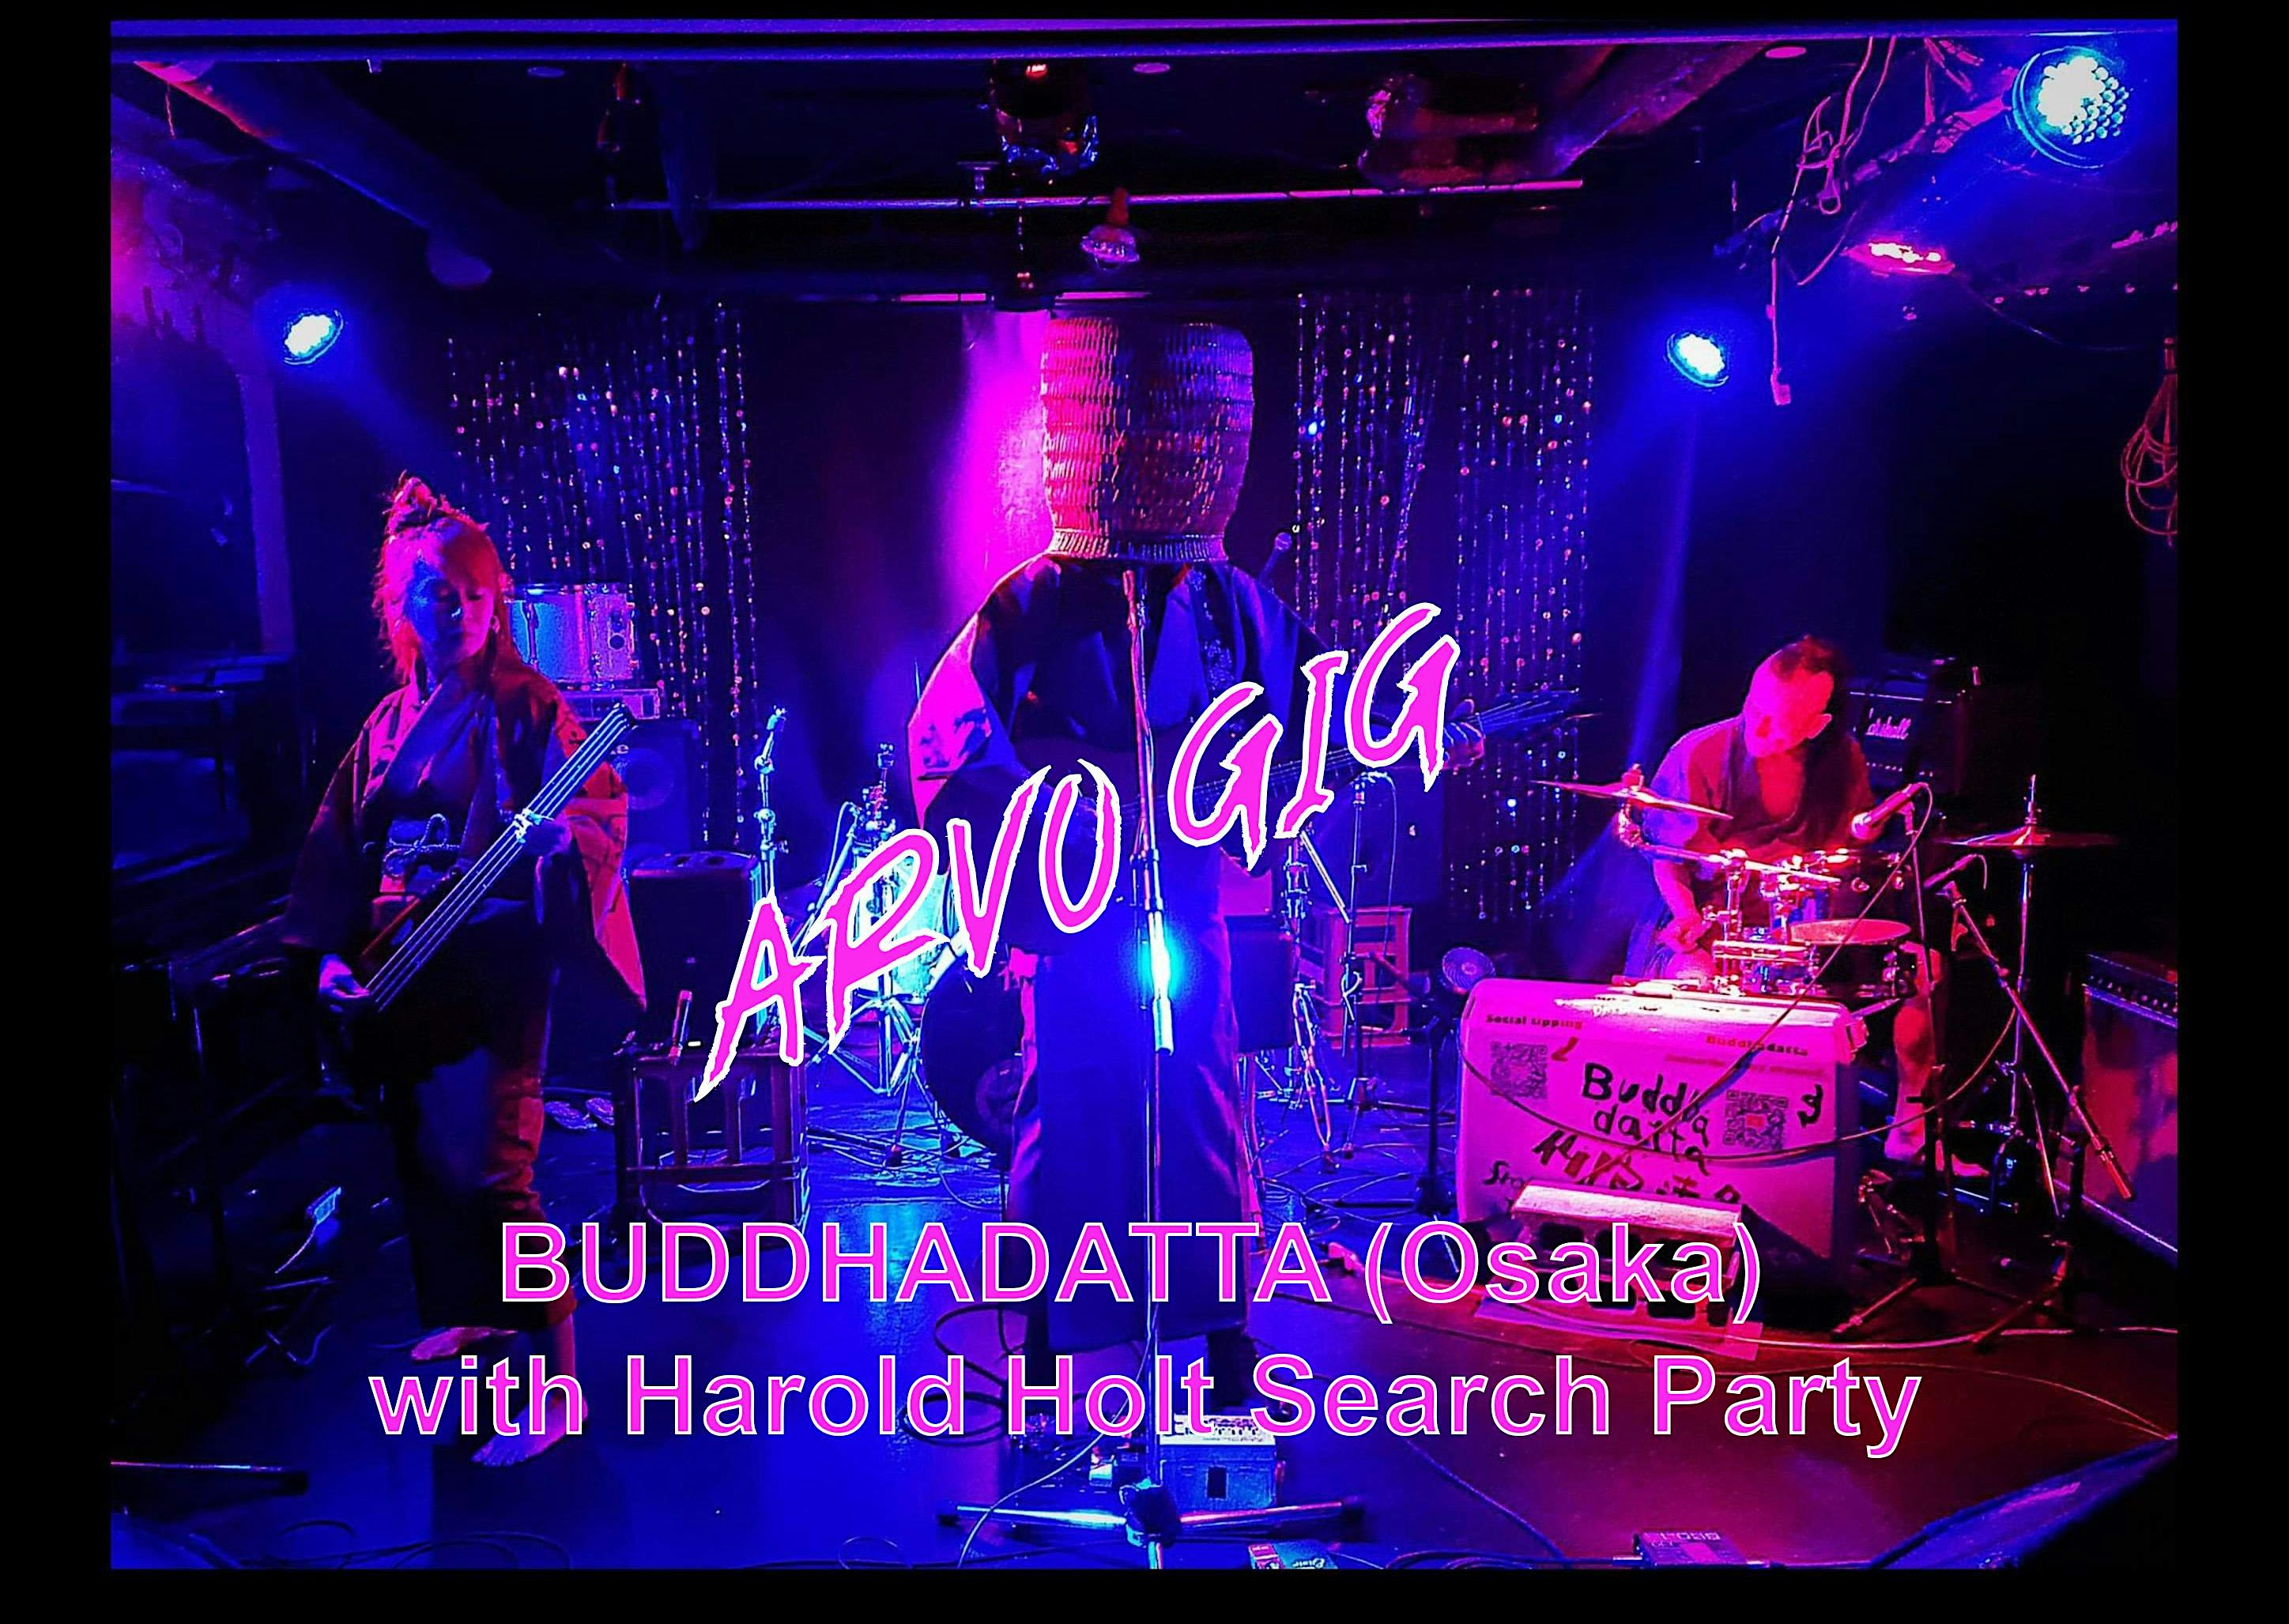 ***ARVO GIG*** BUDDHADATTA + HAROLD HOLT SEARCH PARTY